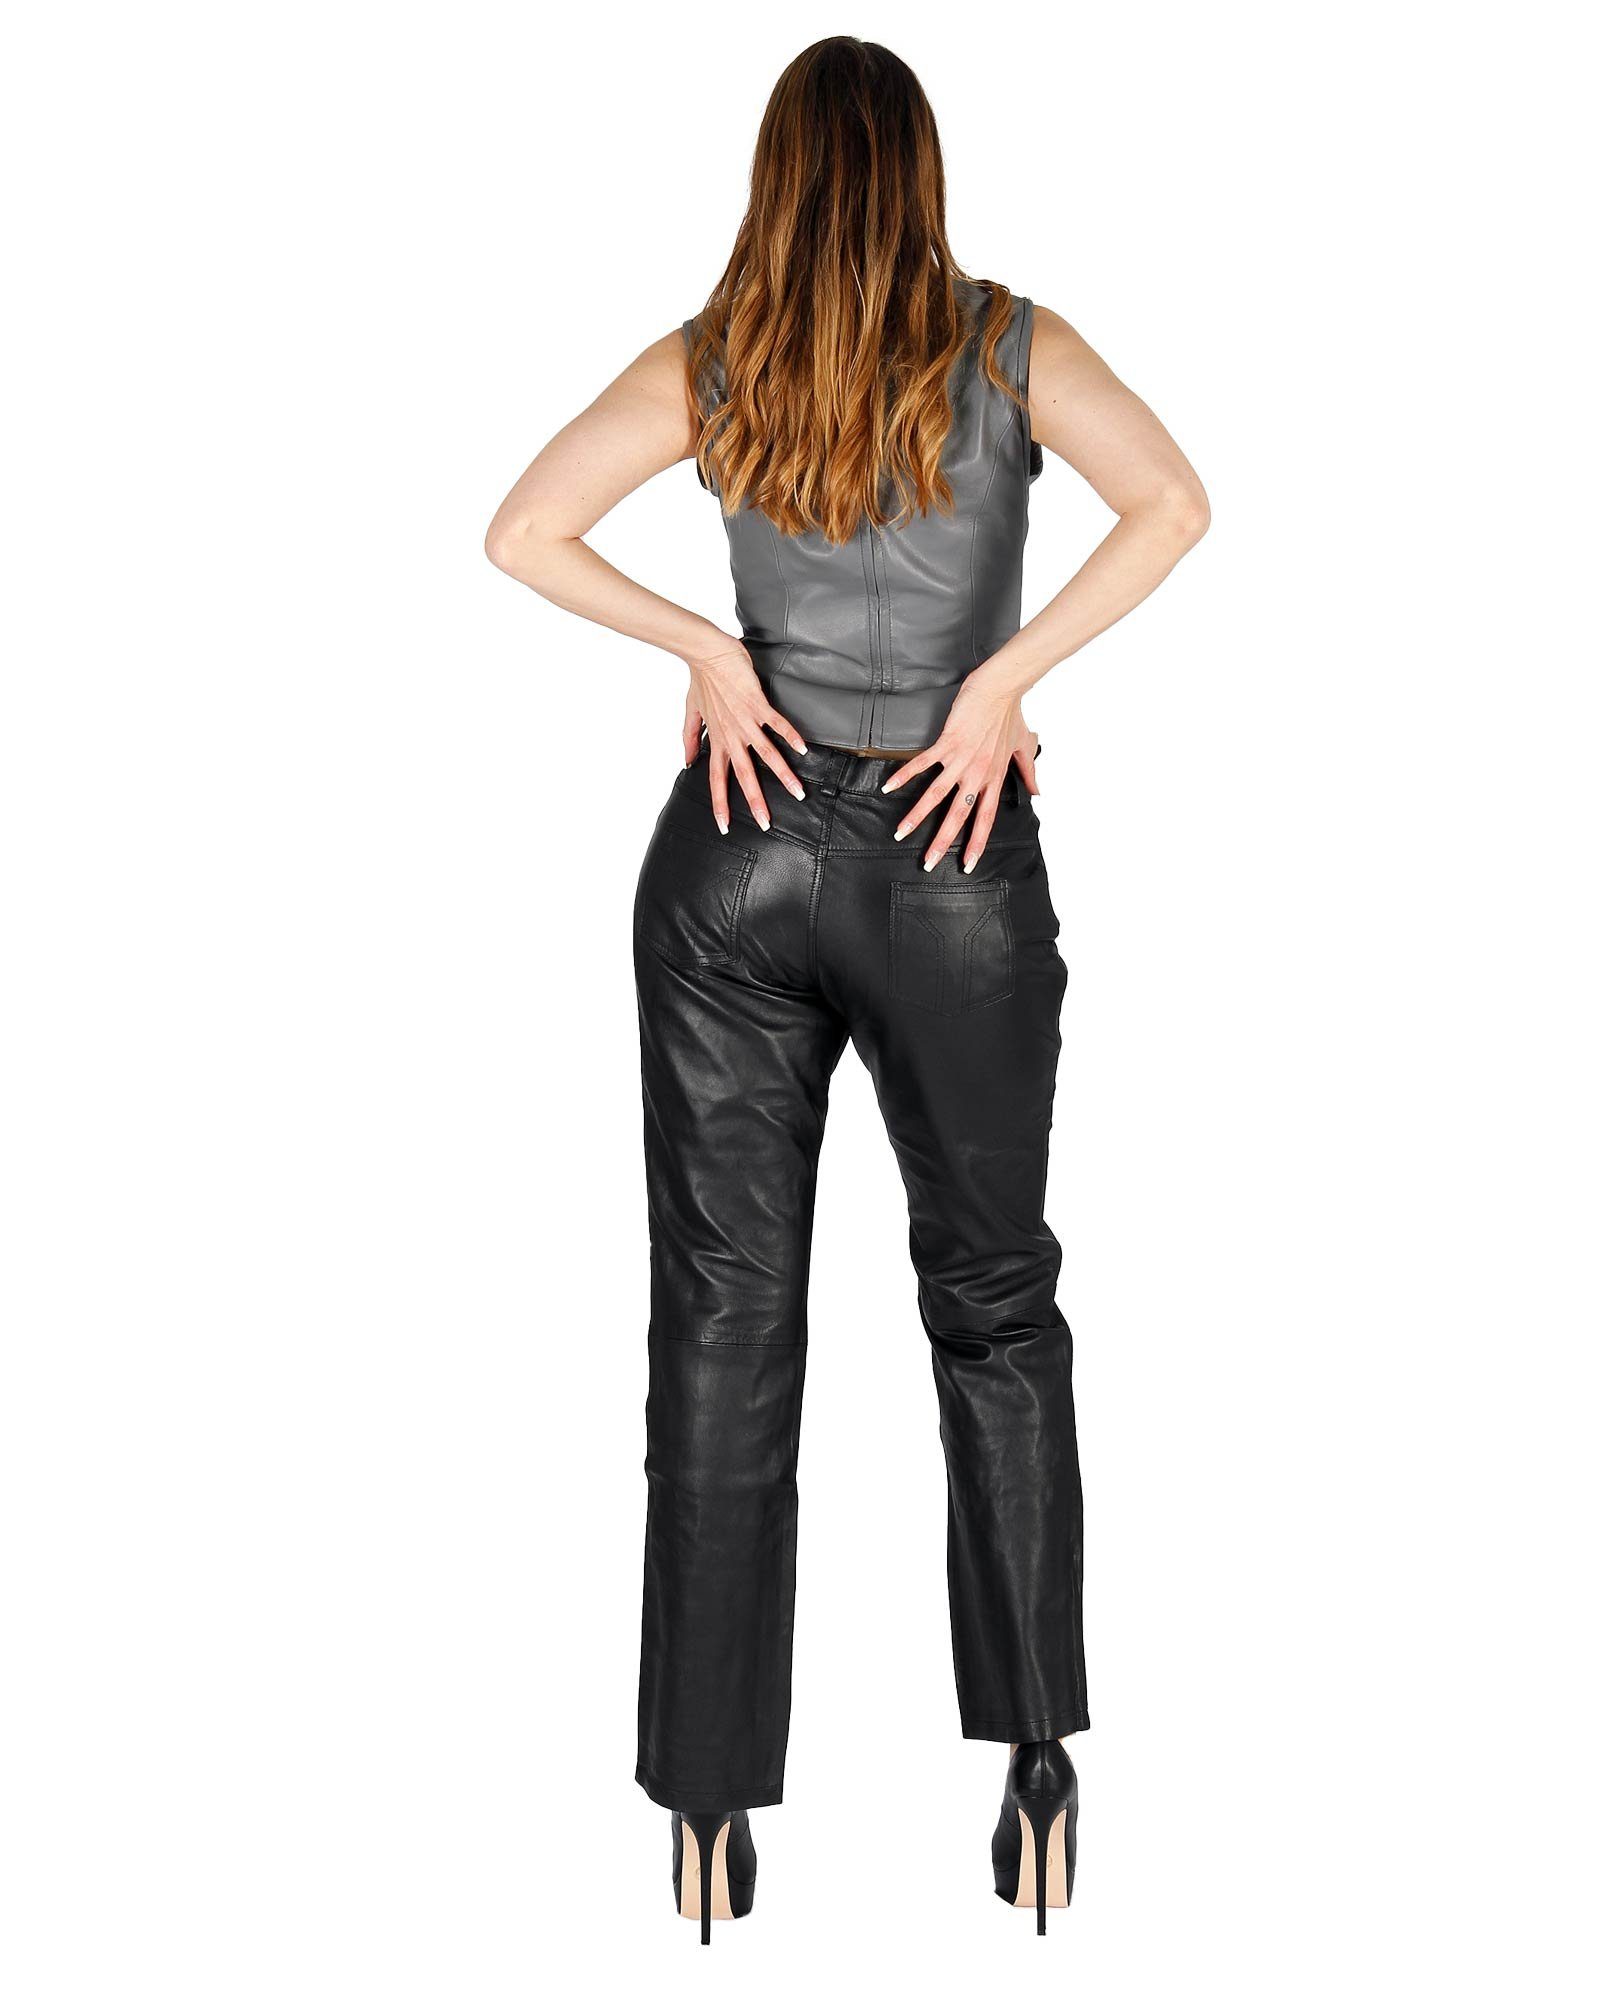 Leder 5-Pocket Damenlederhose Lederhose Fetish-Design Echtes Schwarz Lederhose